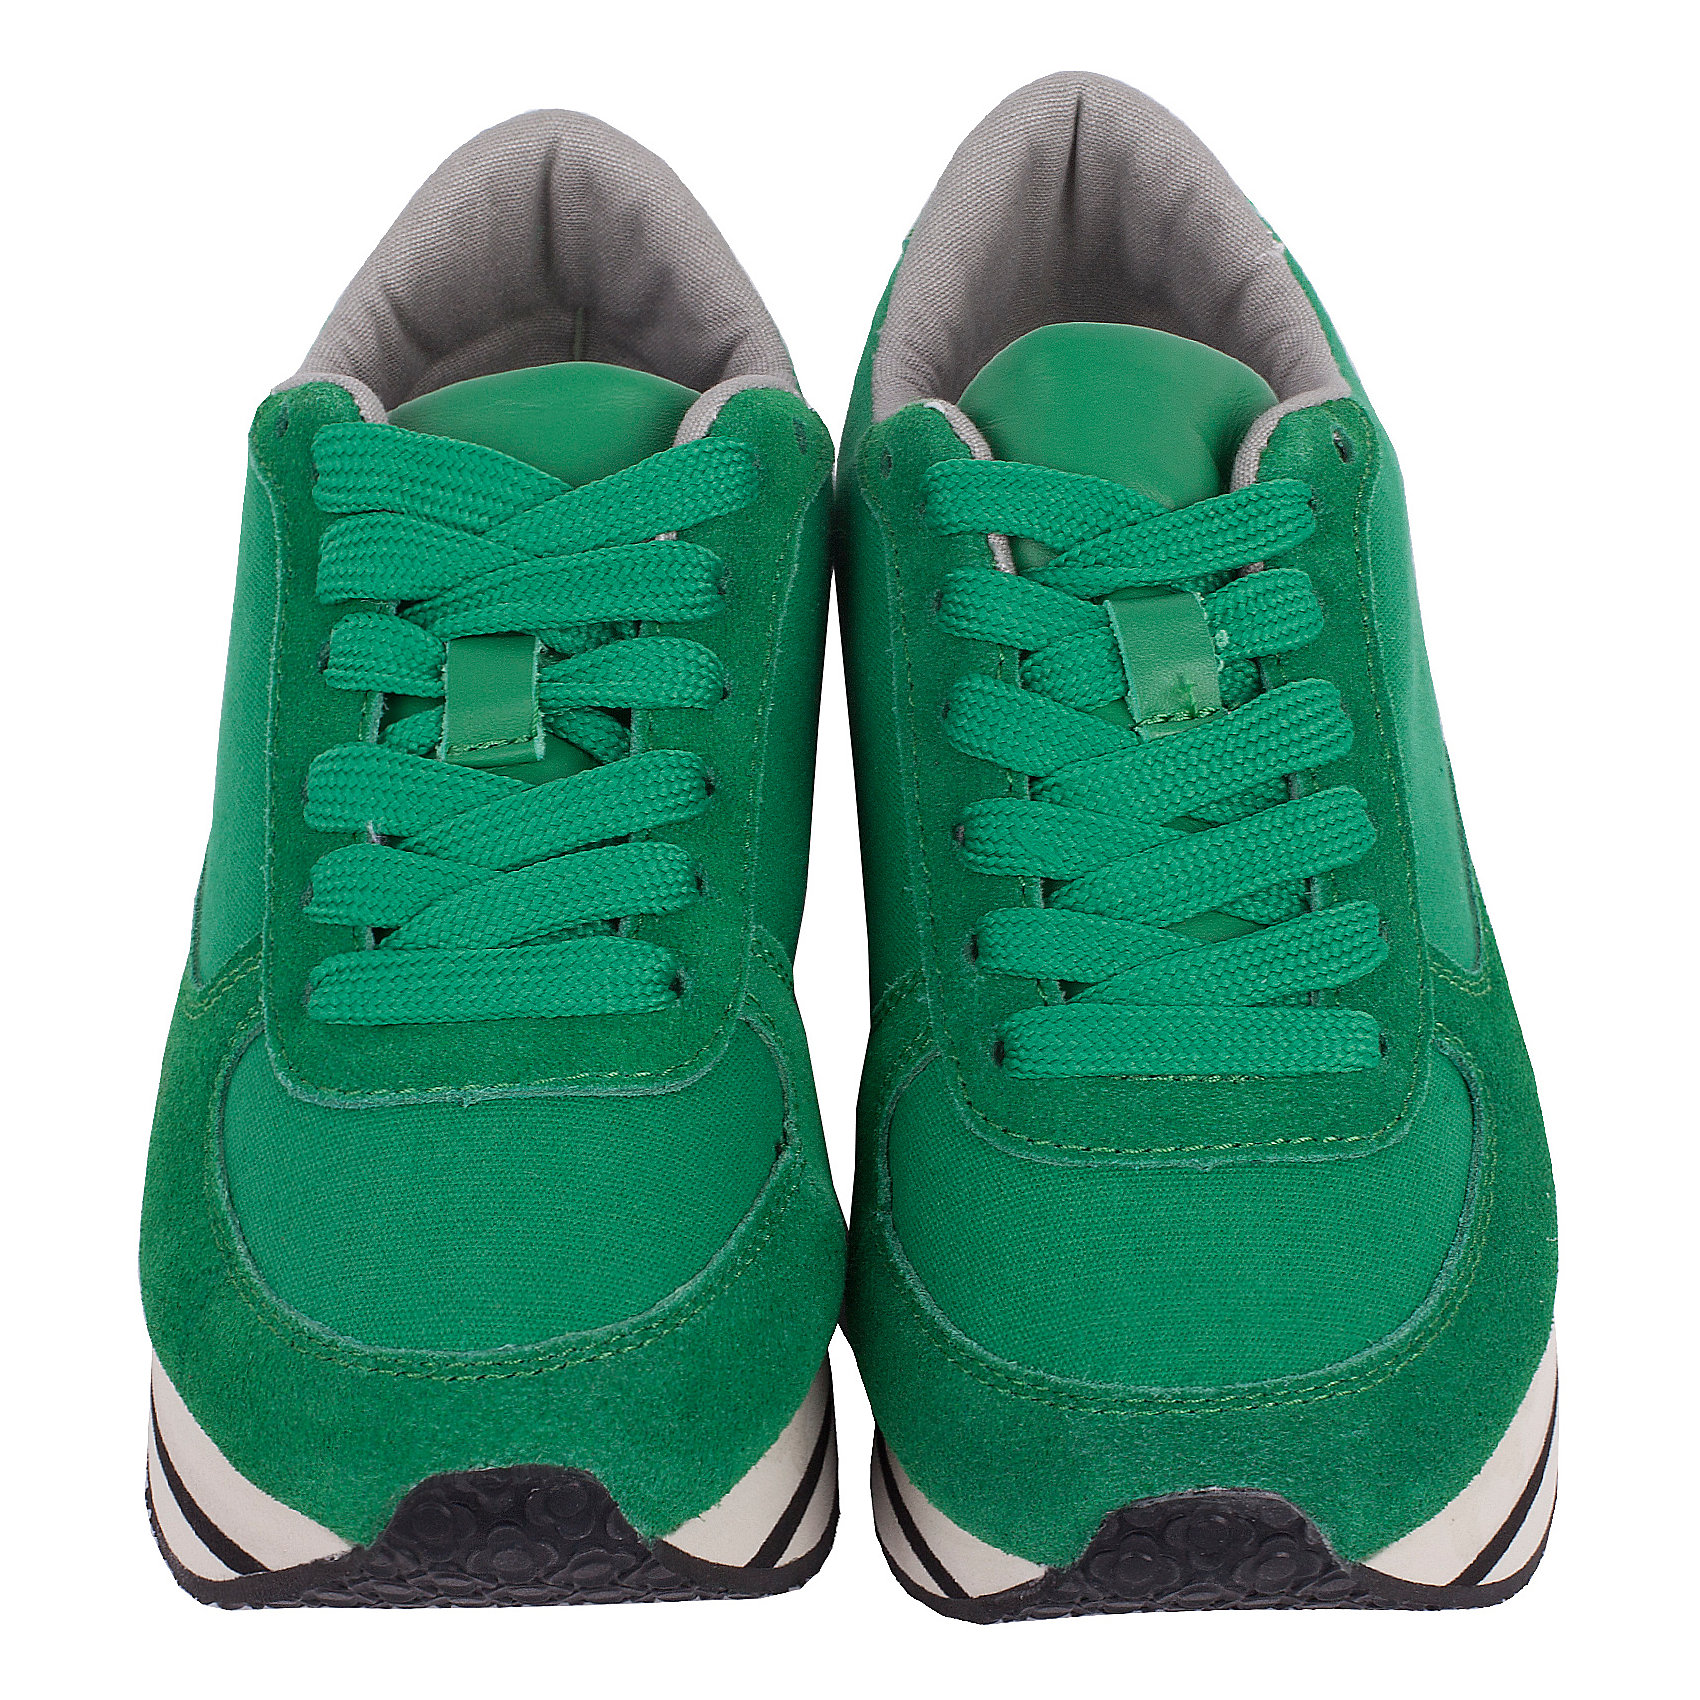 Сине зеленые кроссовки. Oodji кроссовки зеленые. Kappa tifo кроссовки зеленые. Кроссовки Gulliver 37 салатовые. Naoki 2002 зеленые кроссовки.